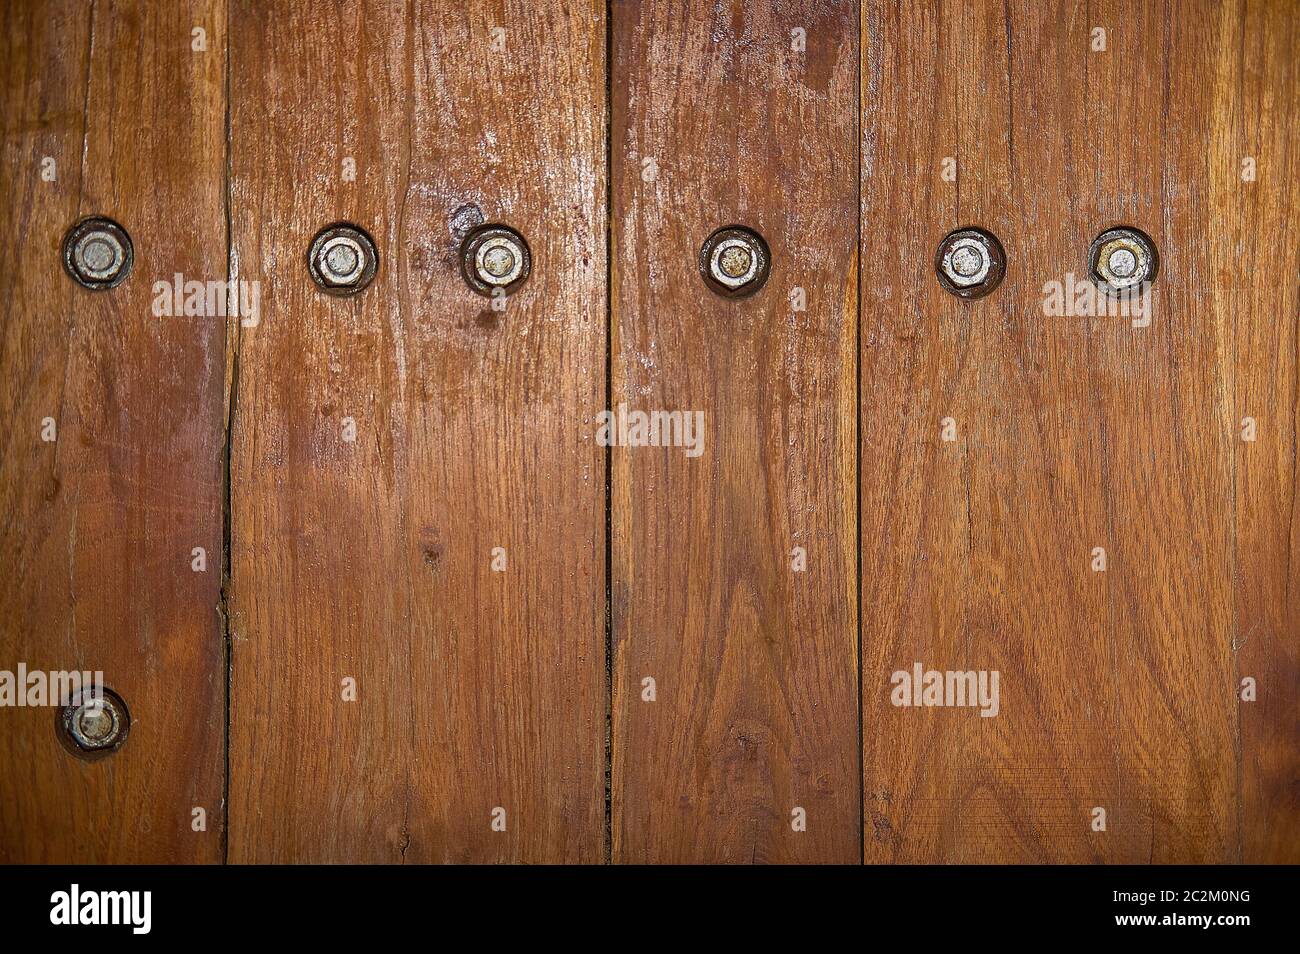 Die Beschaffenheit der dunklen Holzplanken mit sichtbaren Schrauben. Stockfoto